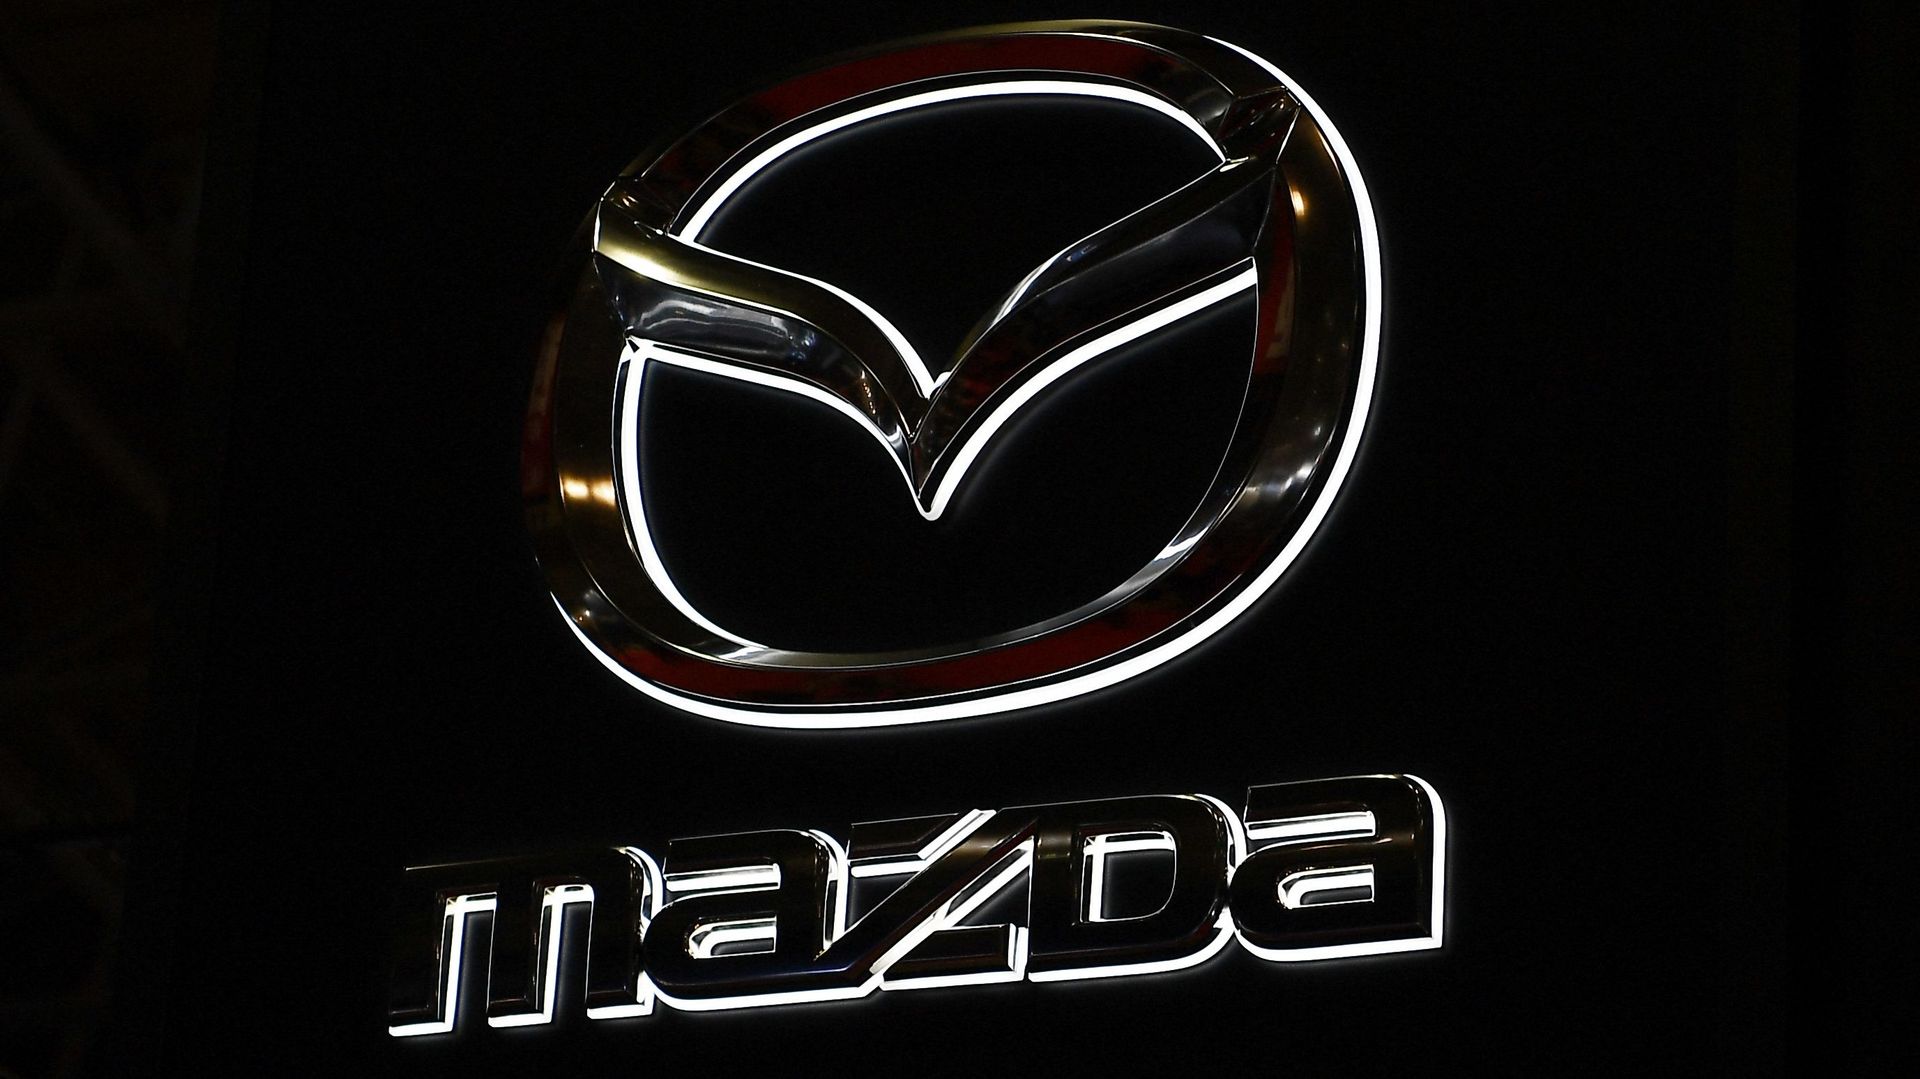 Etats-Unis : des conducteurs de Mazda bloqués sur la radio publique après un bug